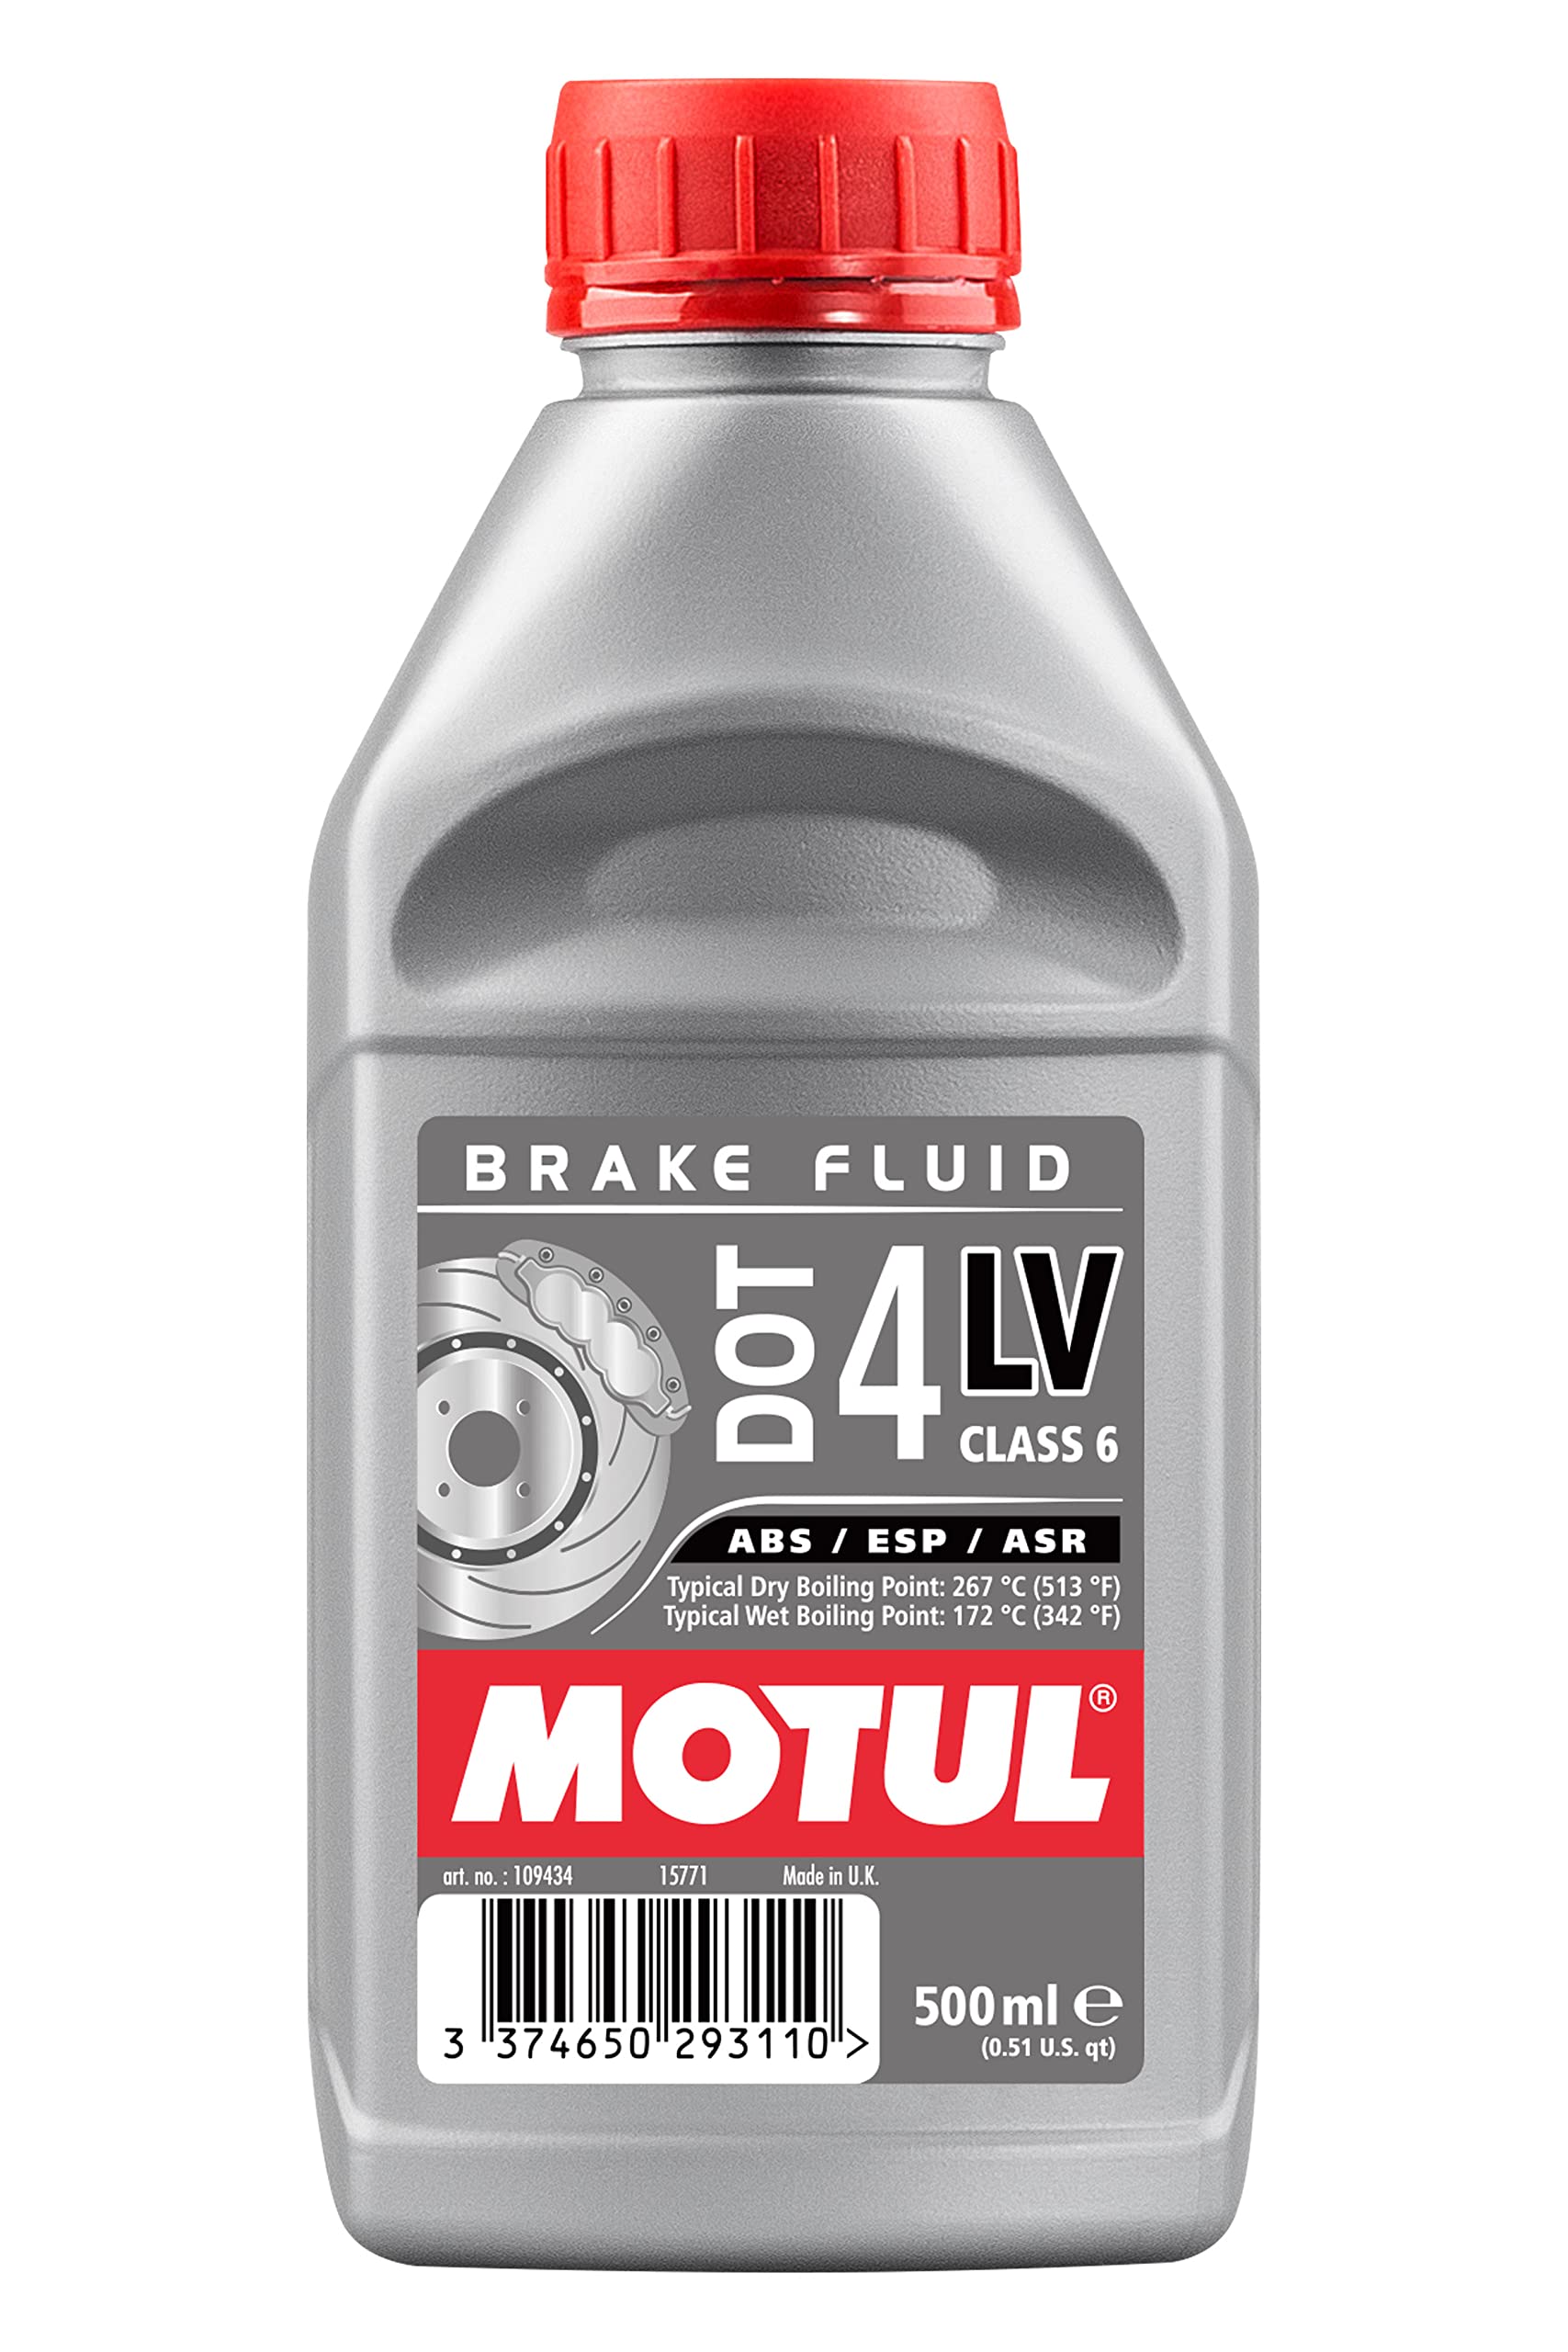 MOTUL(モチュール) DOT 4 LV BRAKE FLUID (DOT 4 LV ブレーキフルード) [正規品] 500ml